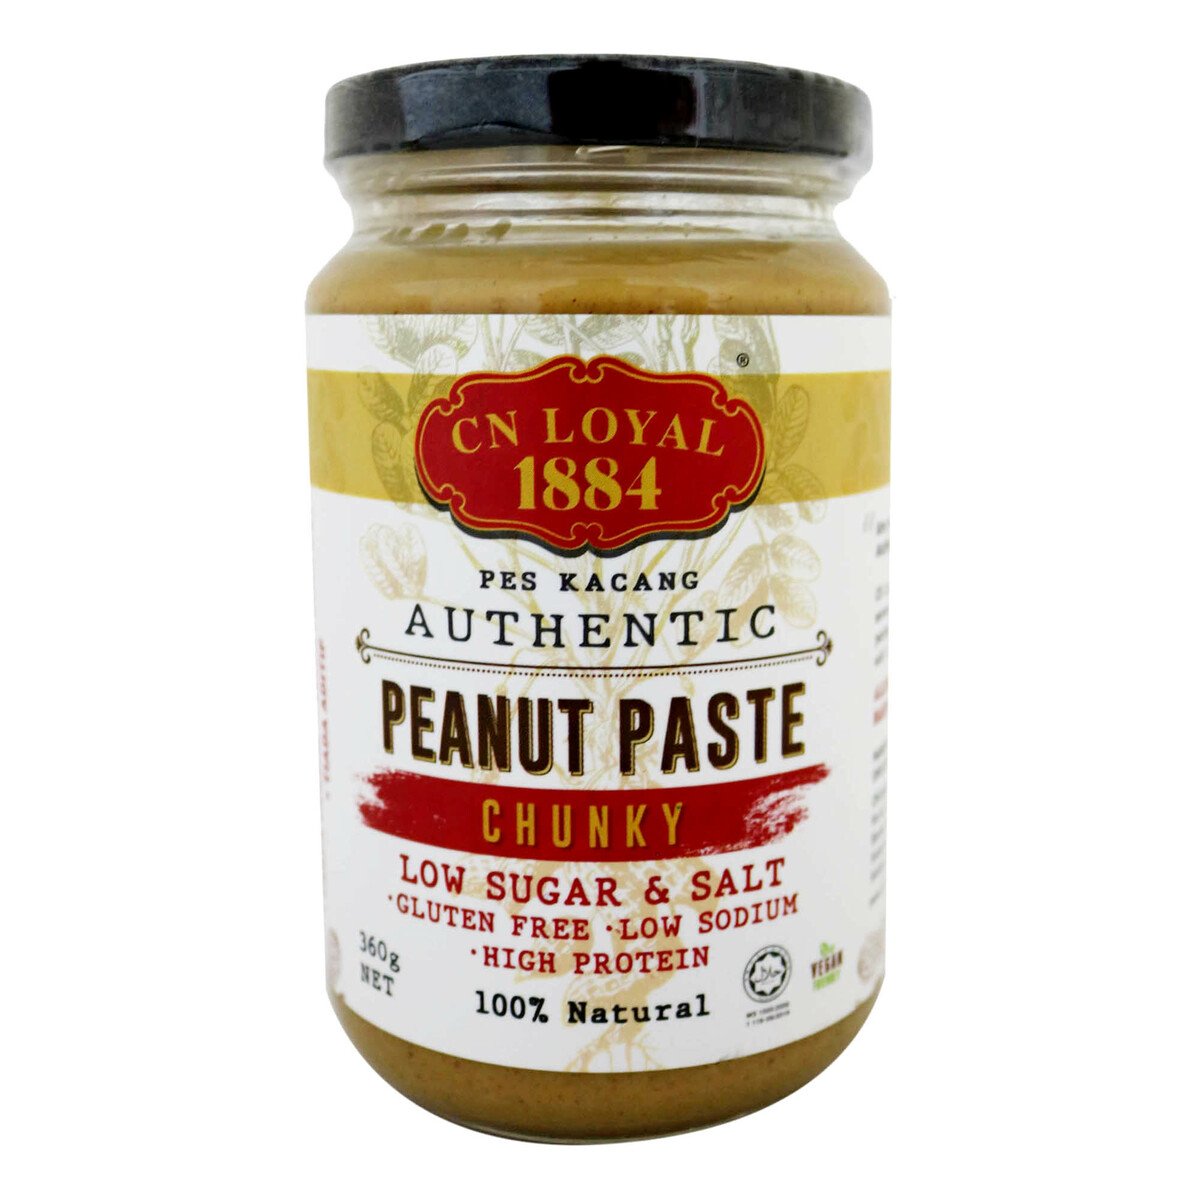 CN Loyal 1884 Peanut Paste Chunky Low Sugar & Salt 360g